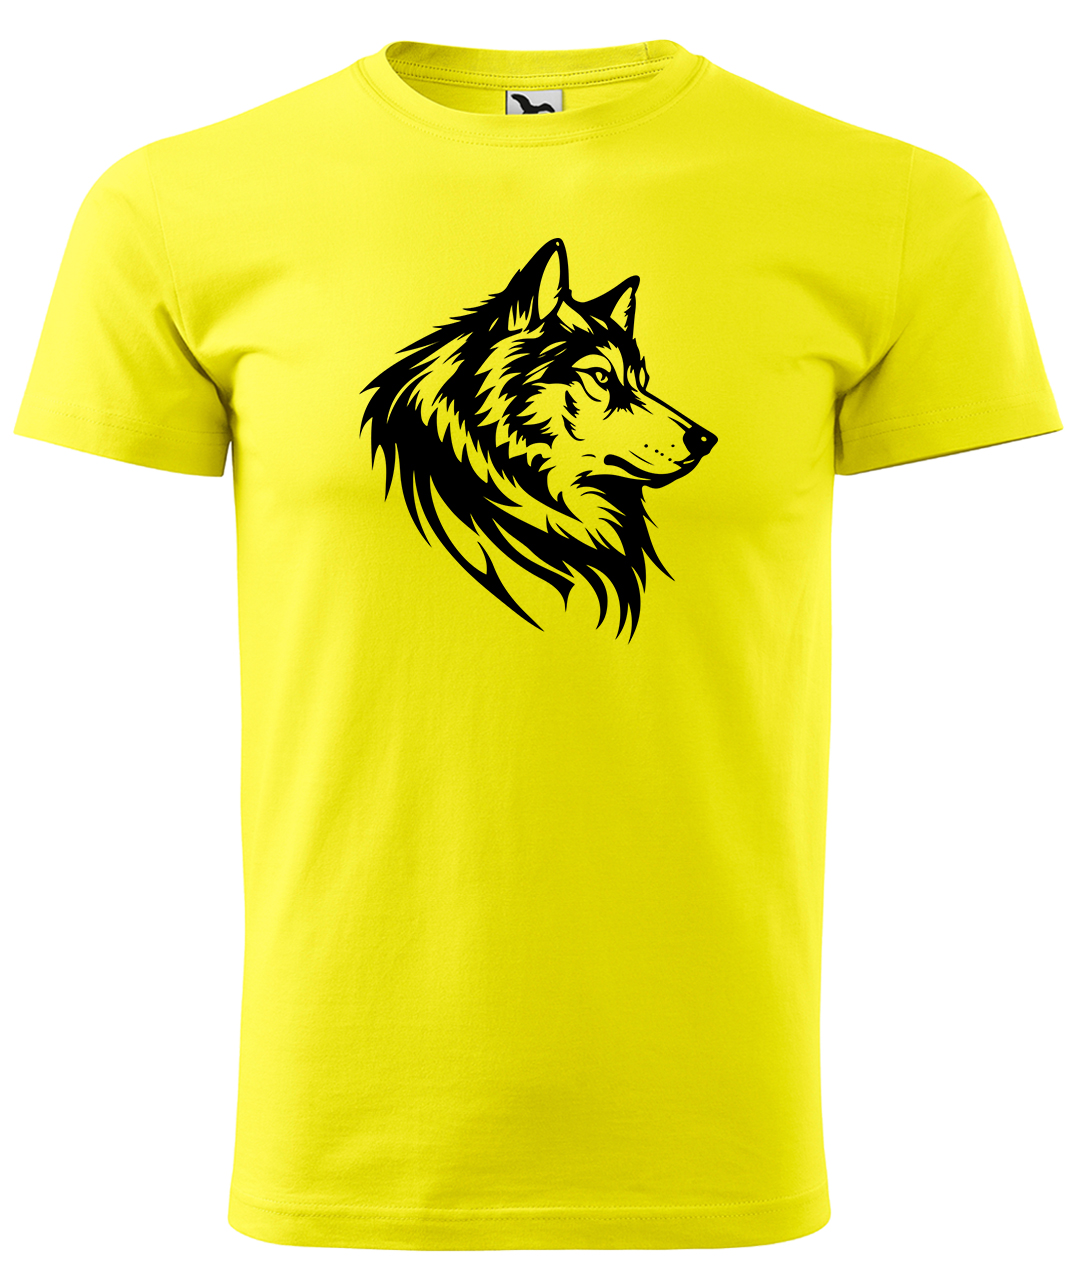 Dětské tričko s vlkem - Wolf Velikost: 4 roky / 110 cm, Barva: Žlutá (04), Délka rukávu: Krátký rukáv